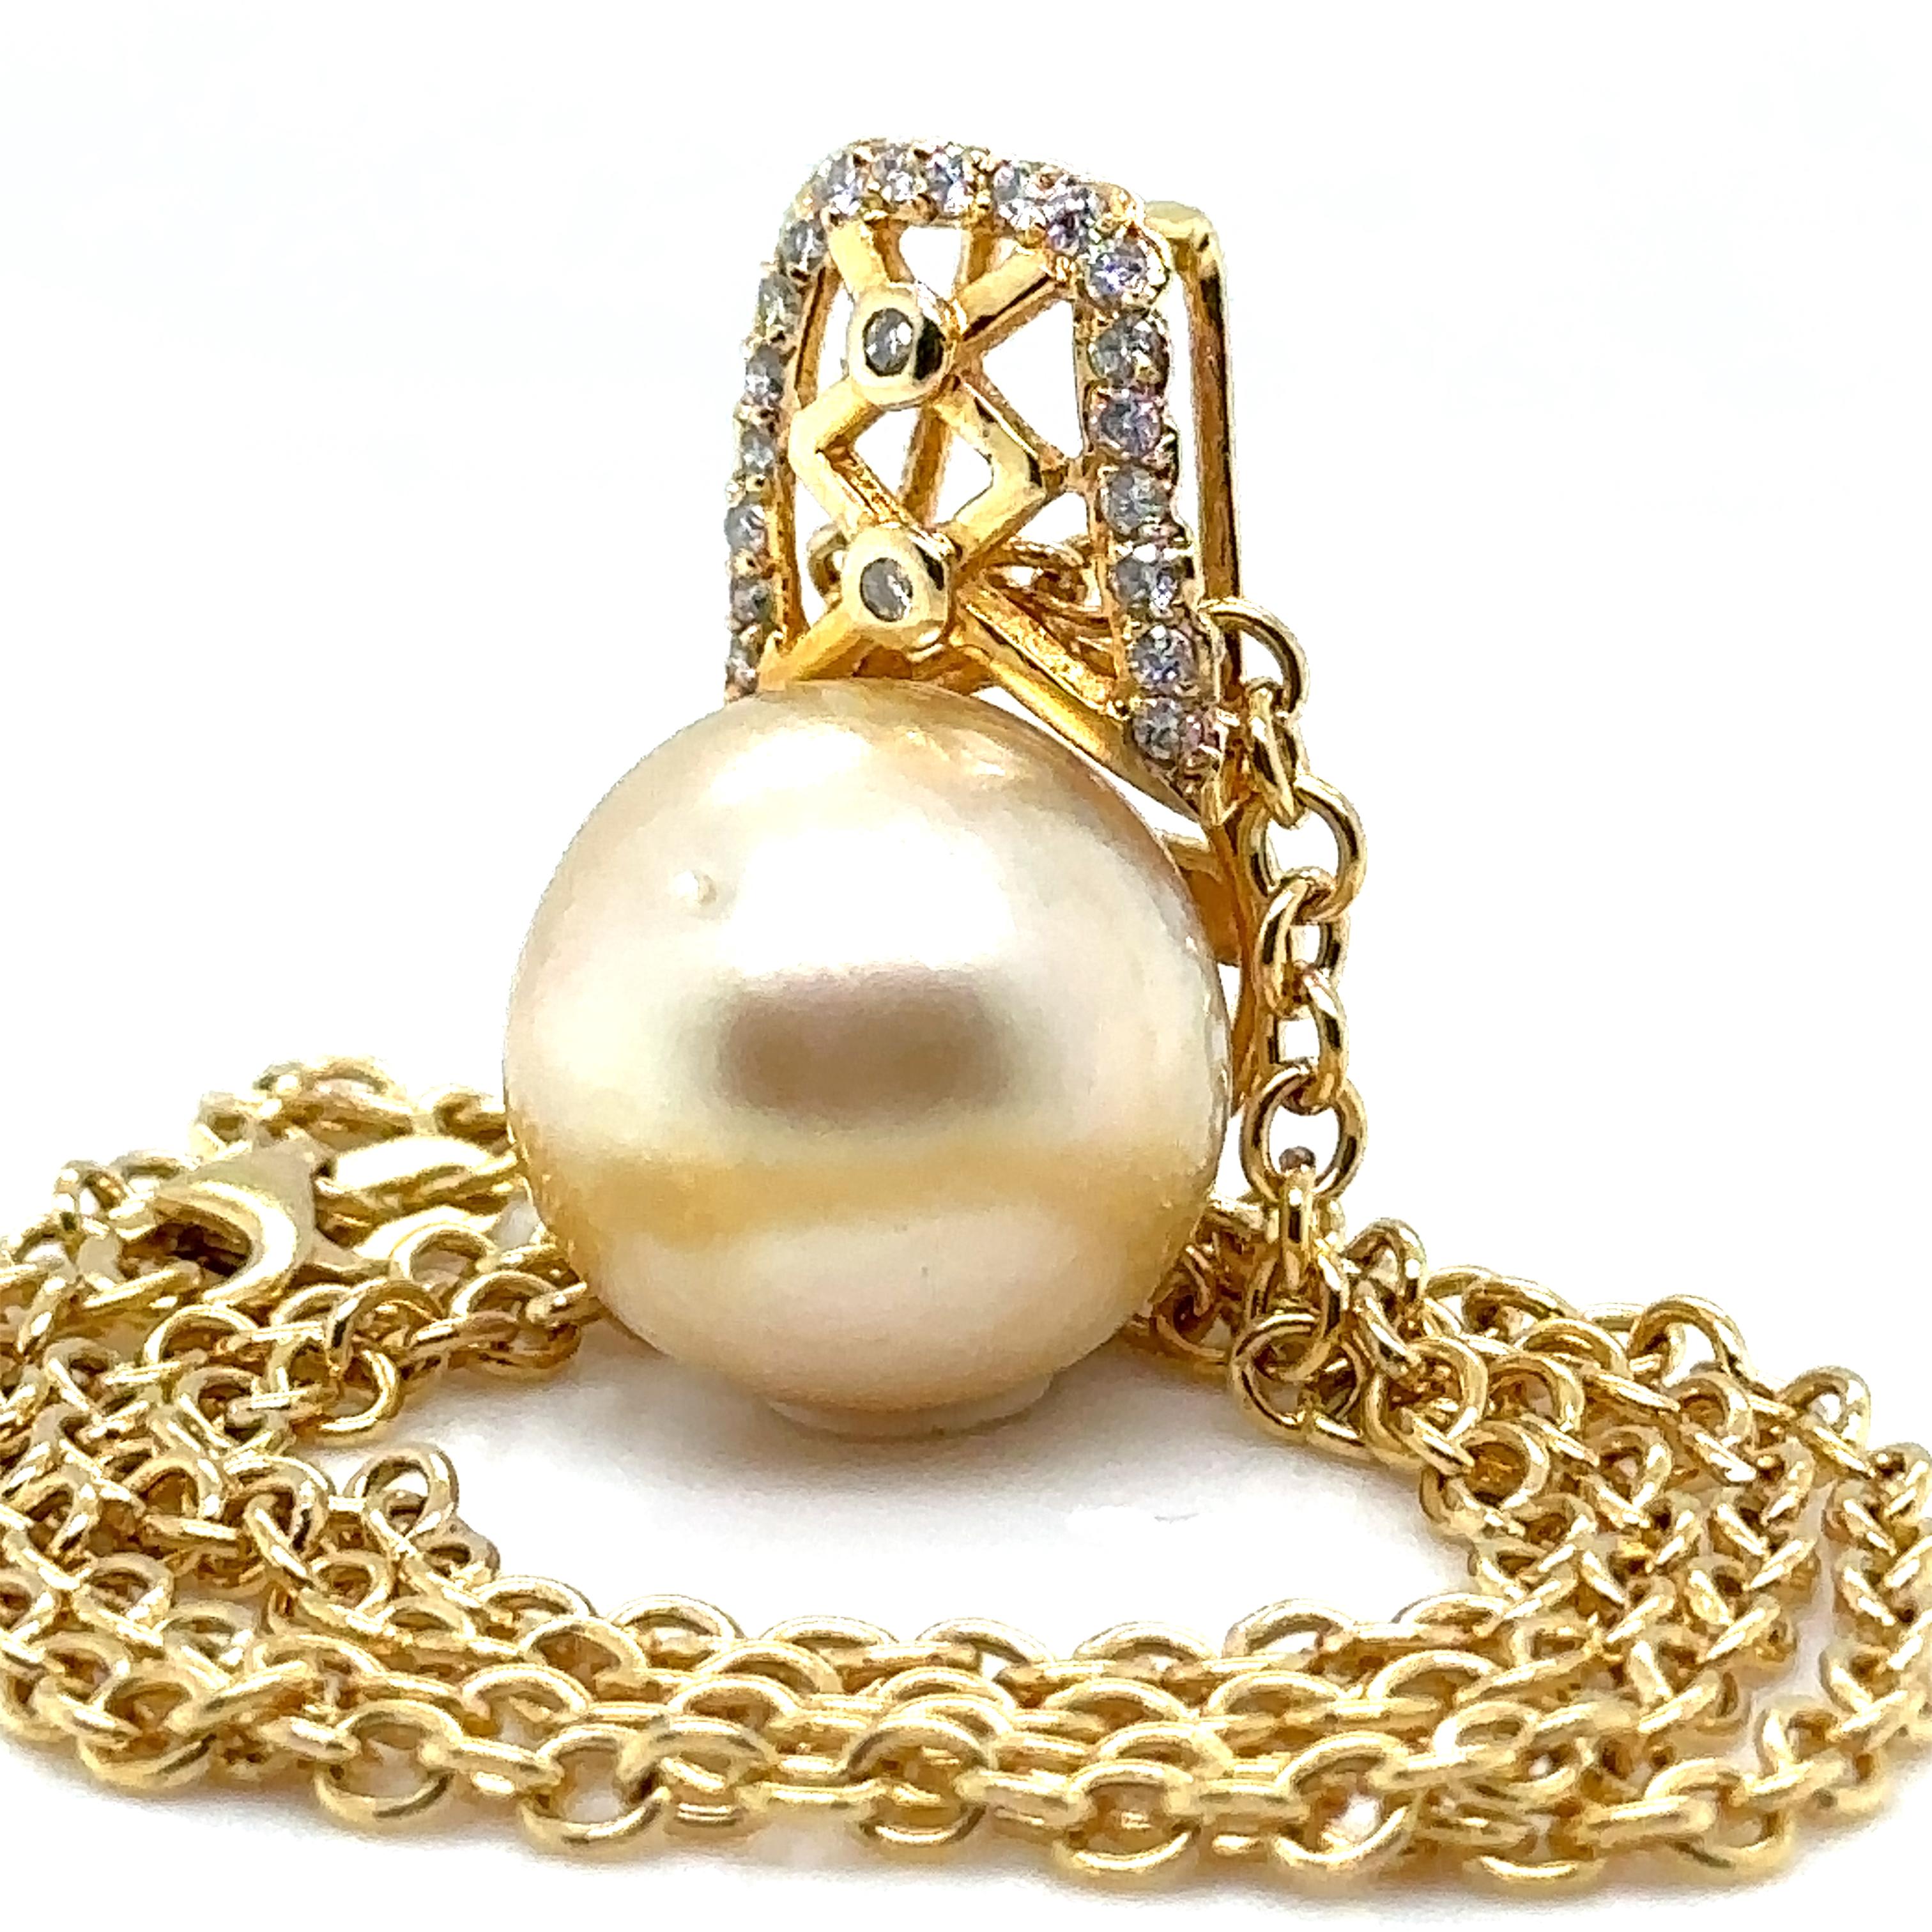 Brilliant Cut Bespoke Pearl & Diamond Pendant and Chain 0.24ct